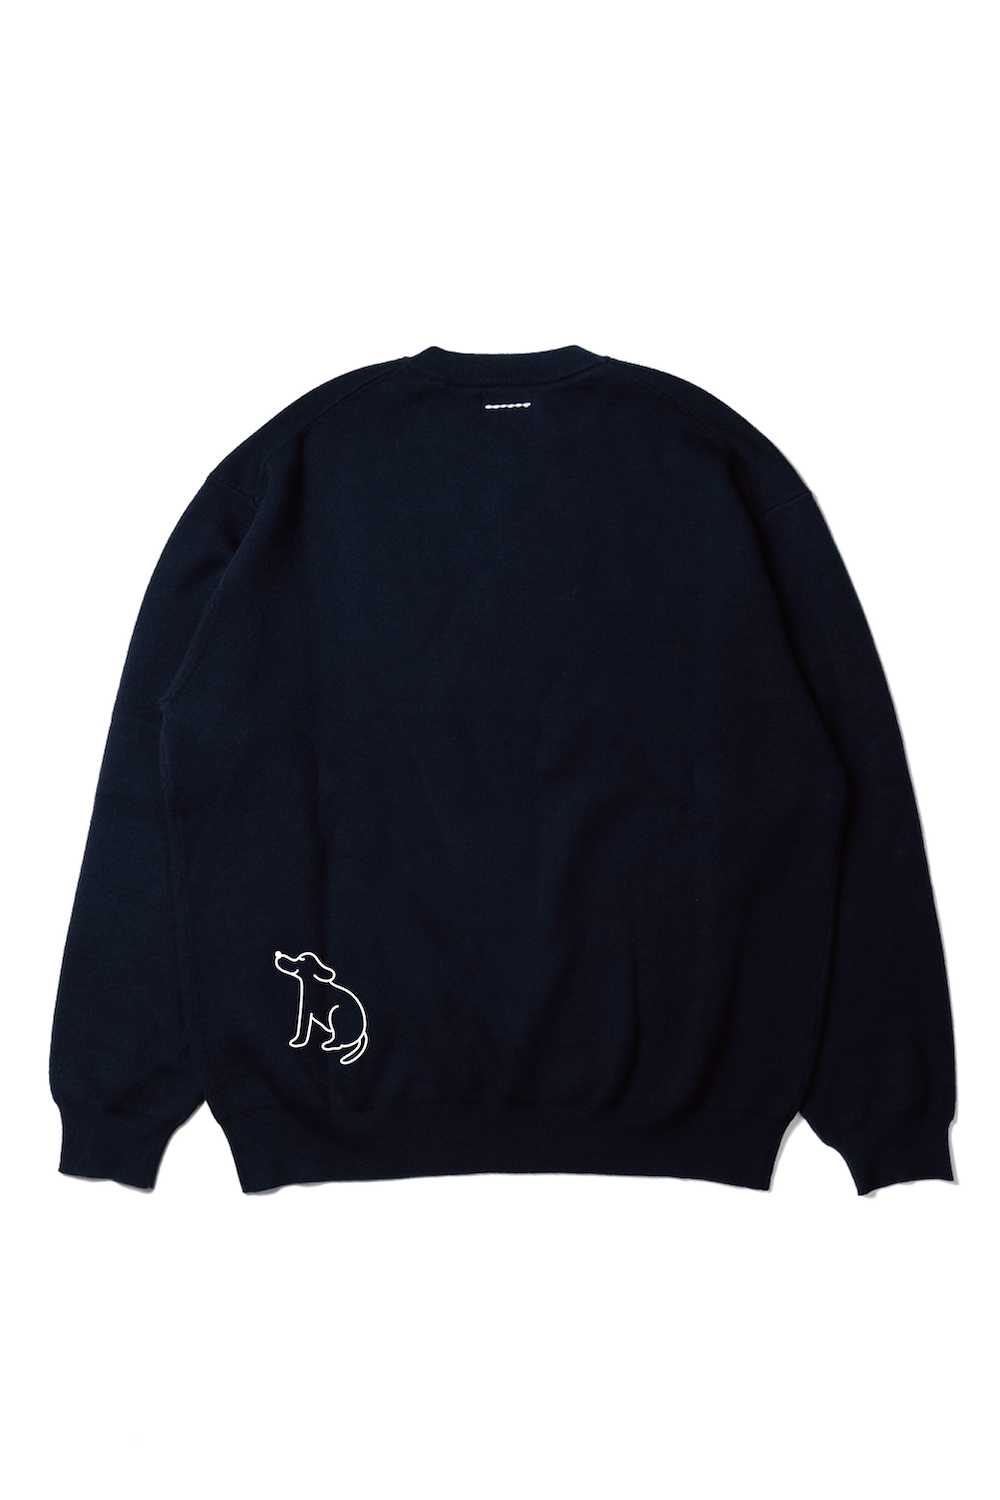 12G smouth knit pullover × Saki Morinaga